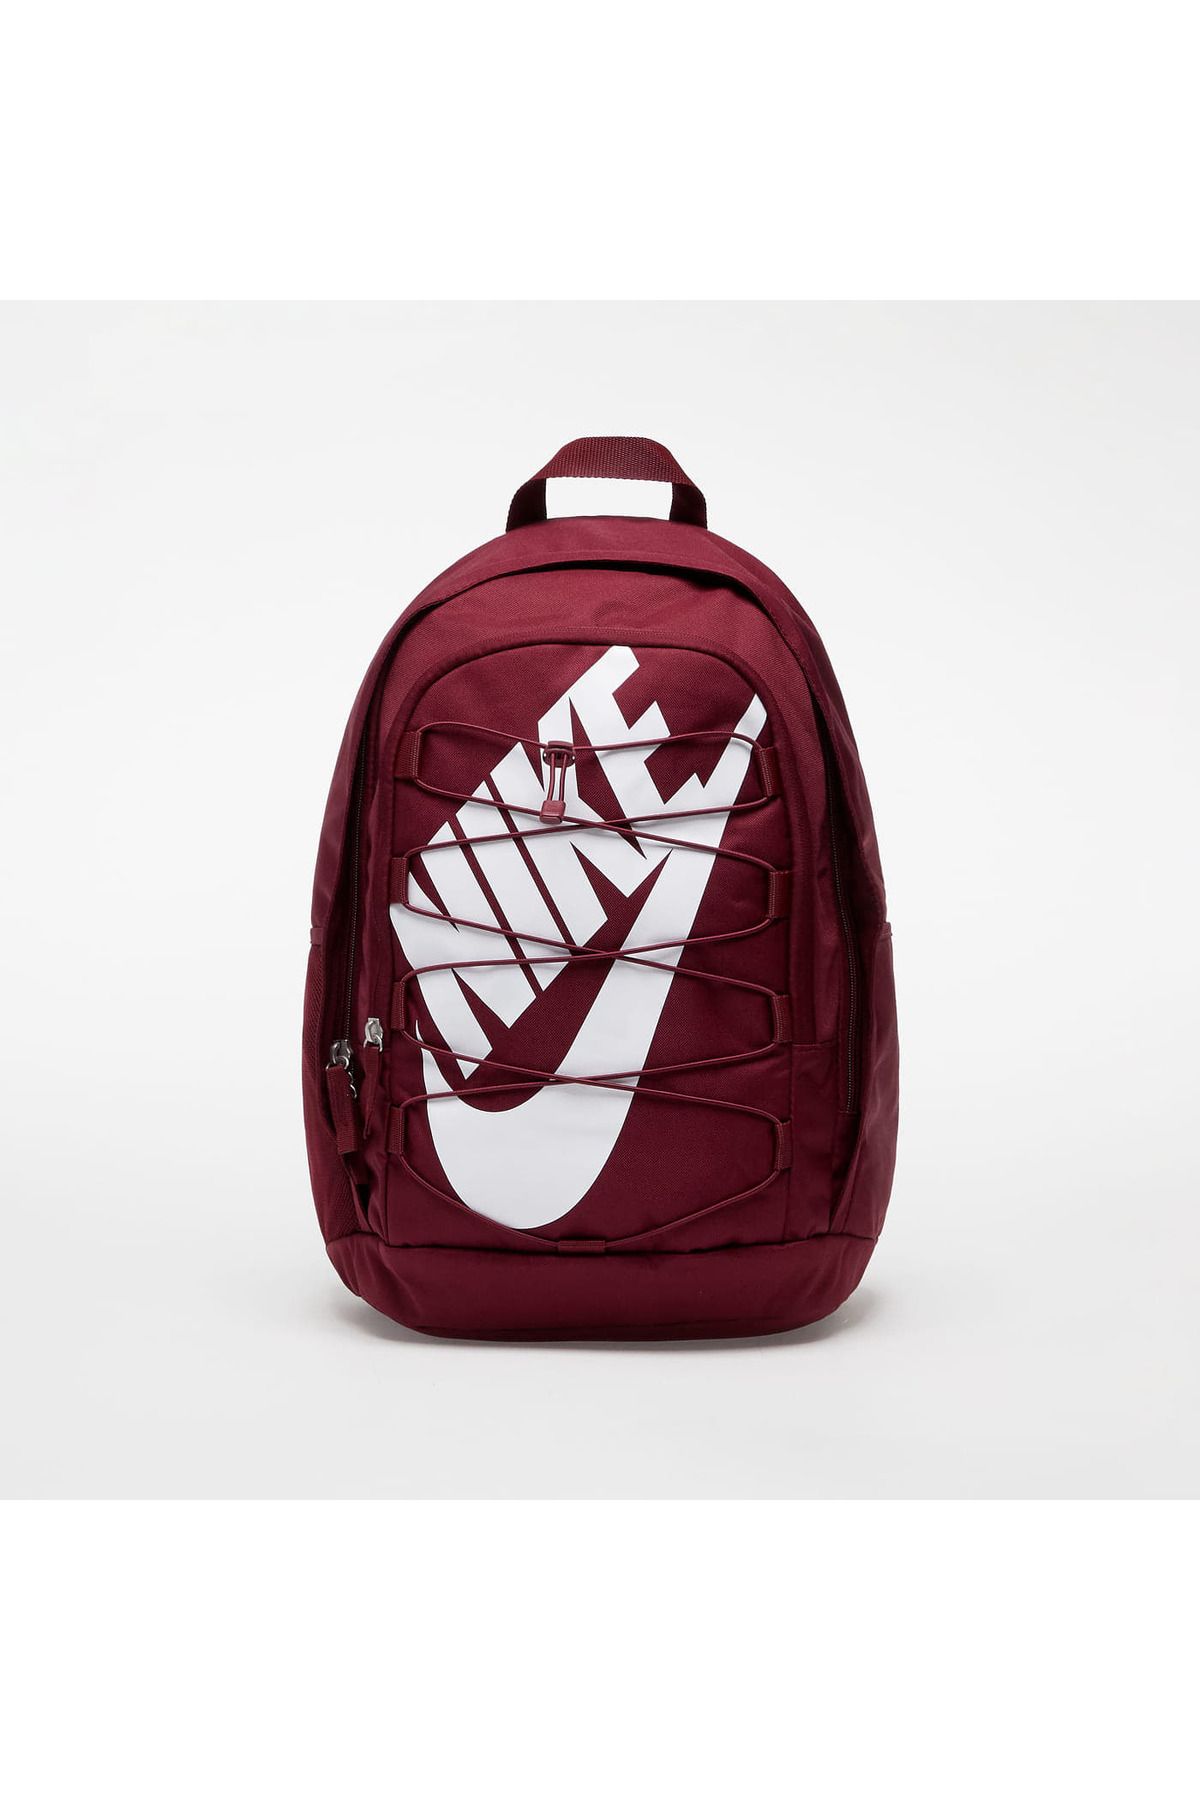 Nike Hayward 2.0 Backpack sırt çantası 26 lt